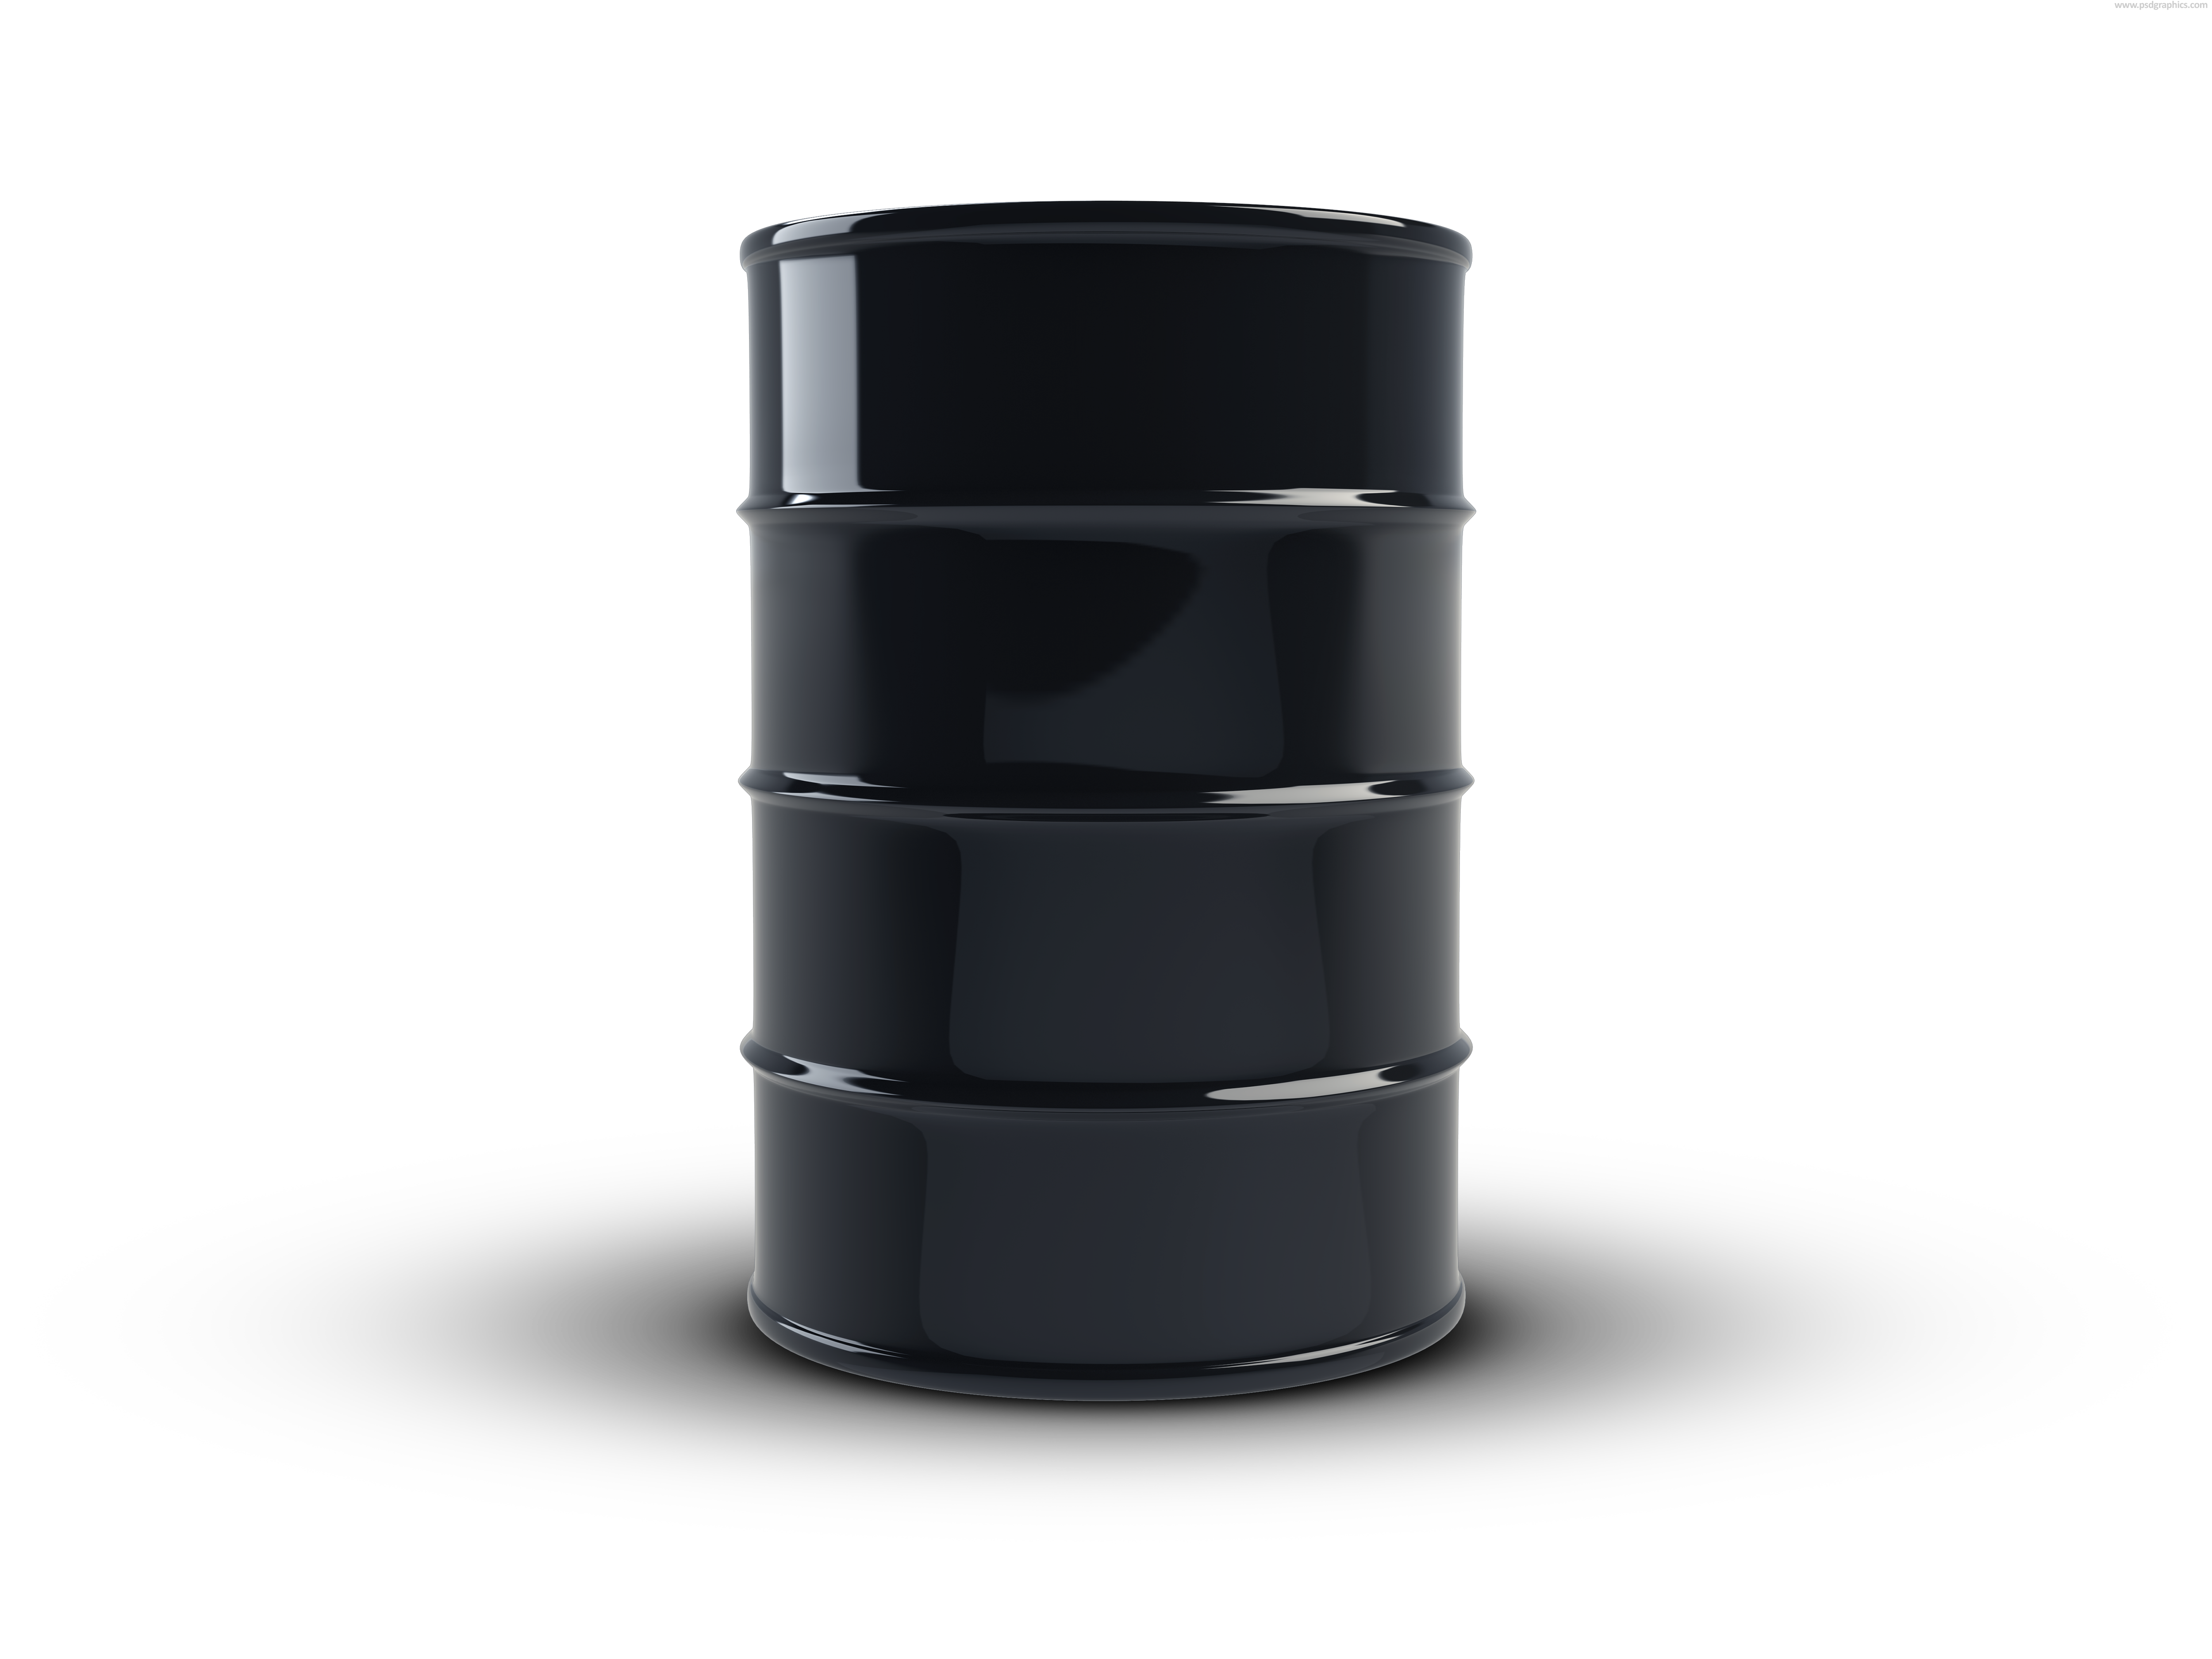 Black Oil Barrel And Barrels Png - 1761 - TransparentPNG